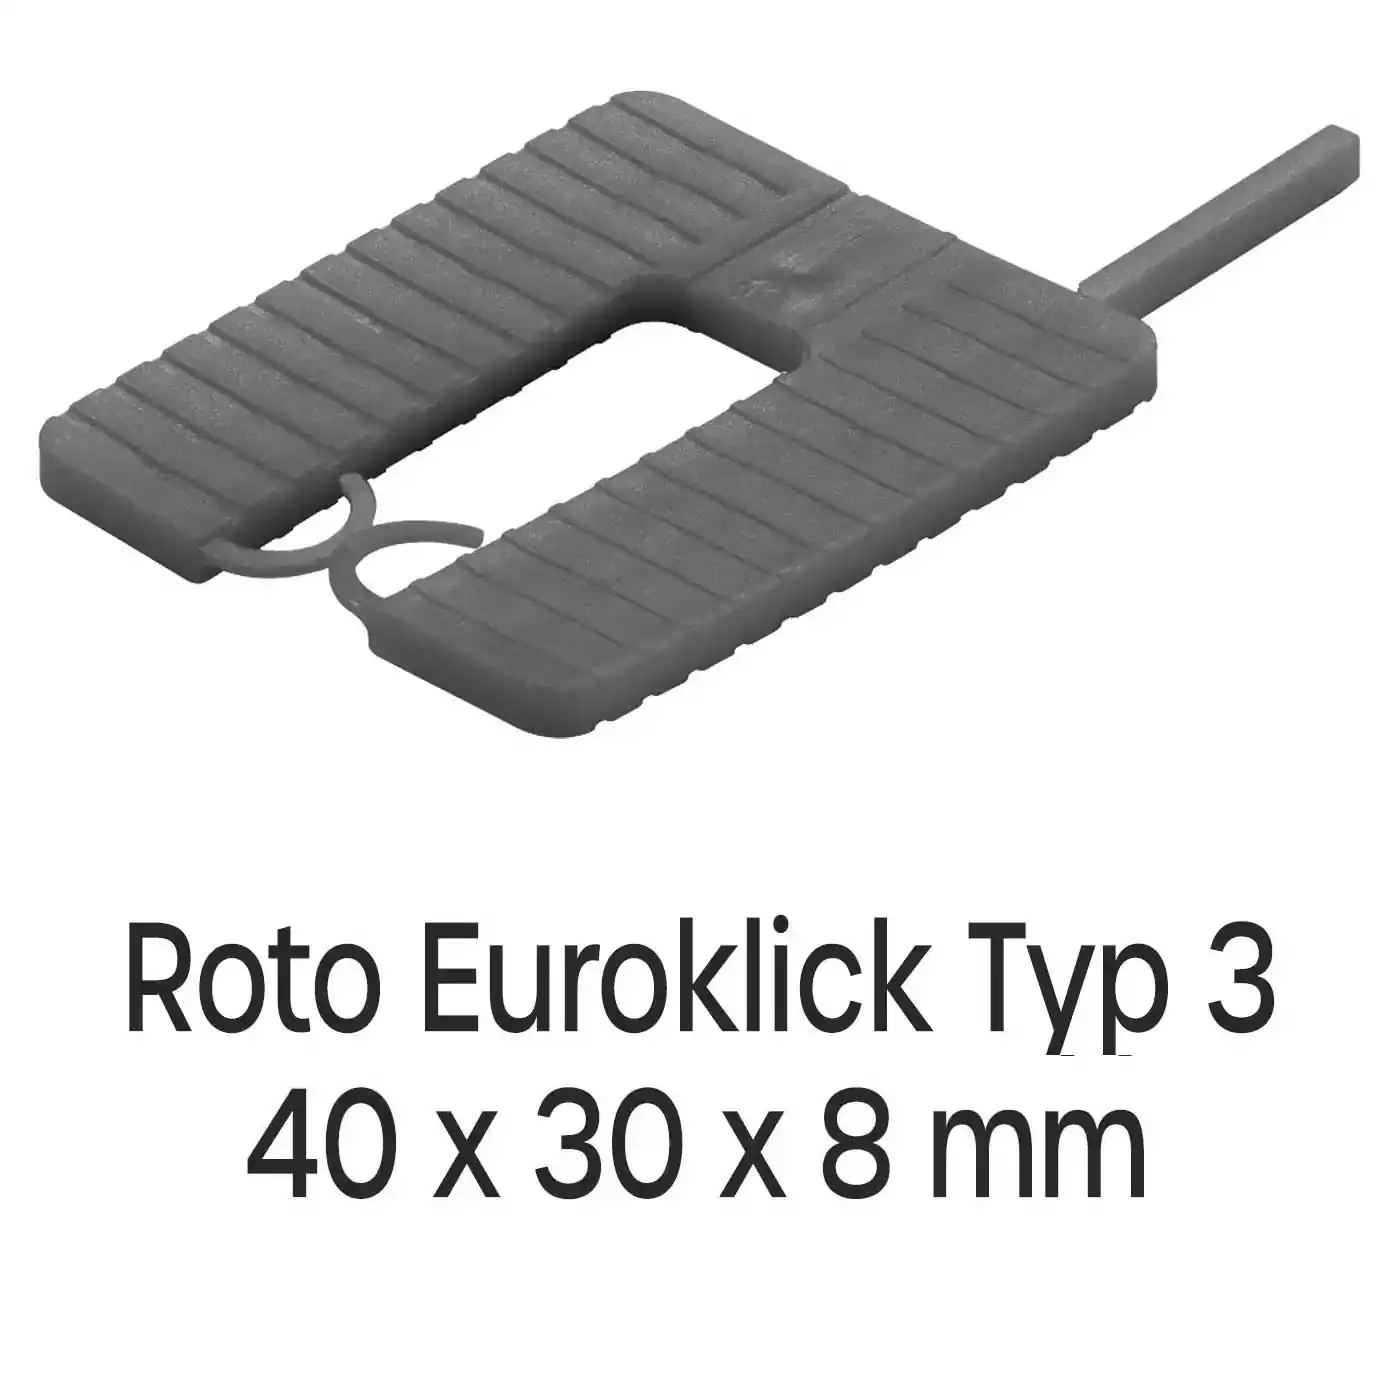 Distanzplatten Roto Euroklick Typ 3 40 x 30 x 8 mm 500 Stück